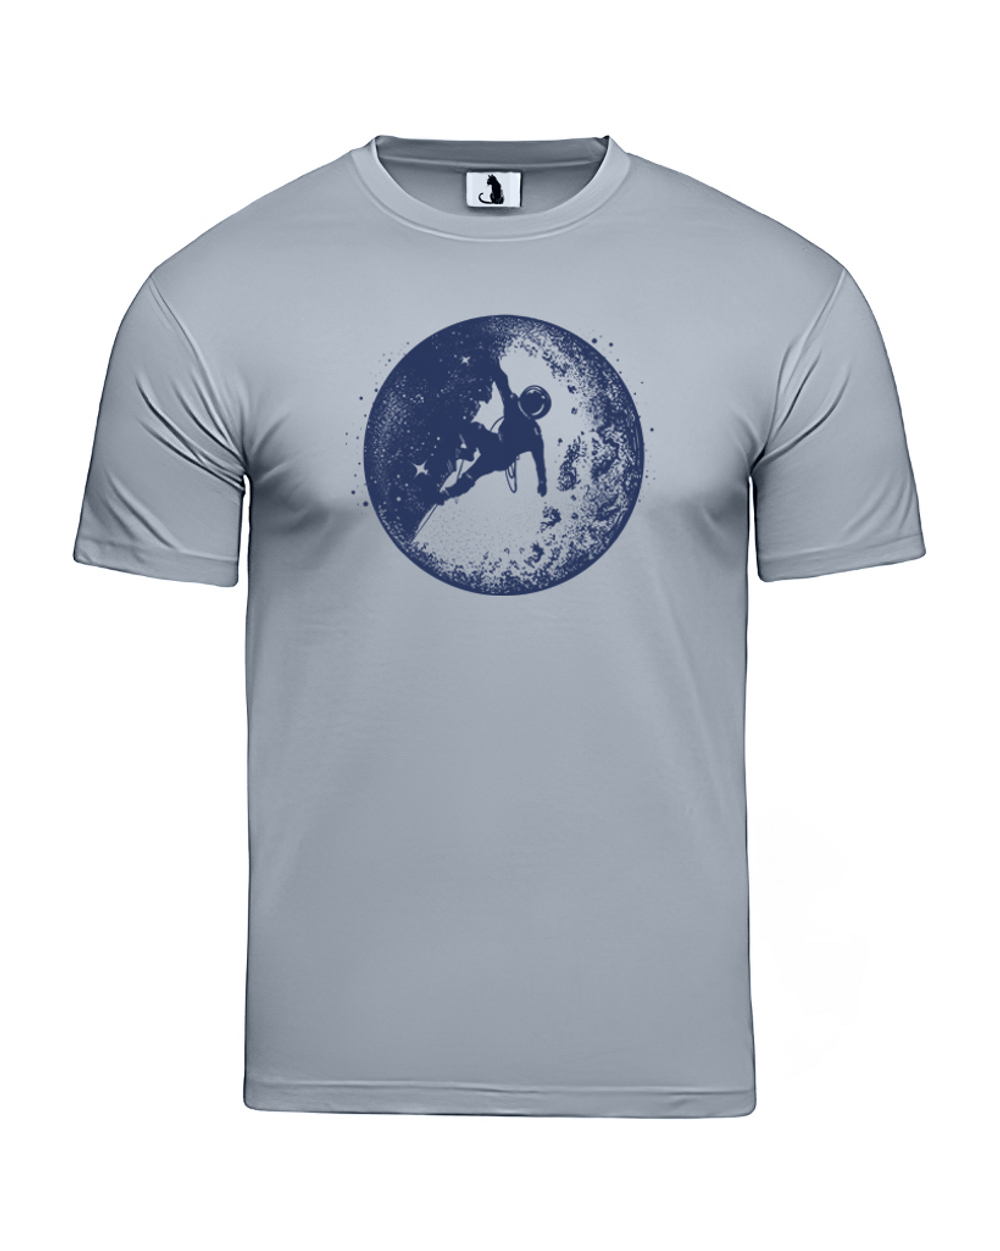 Футболка Космонавт на Луне unisex серая с синим рисунком